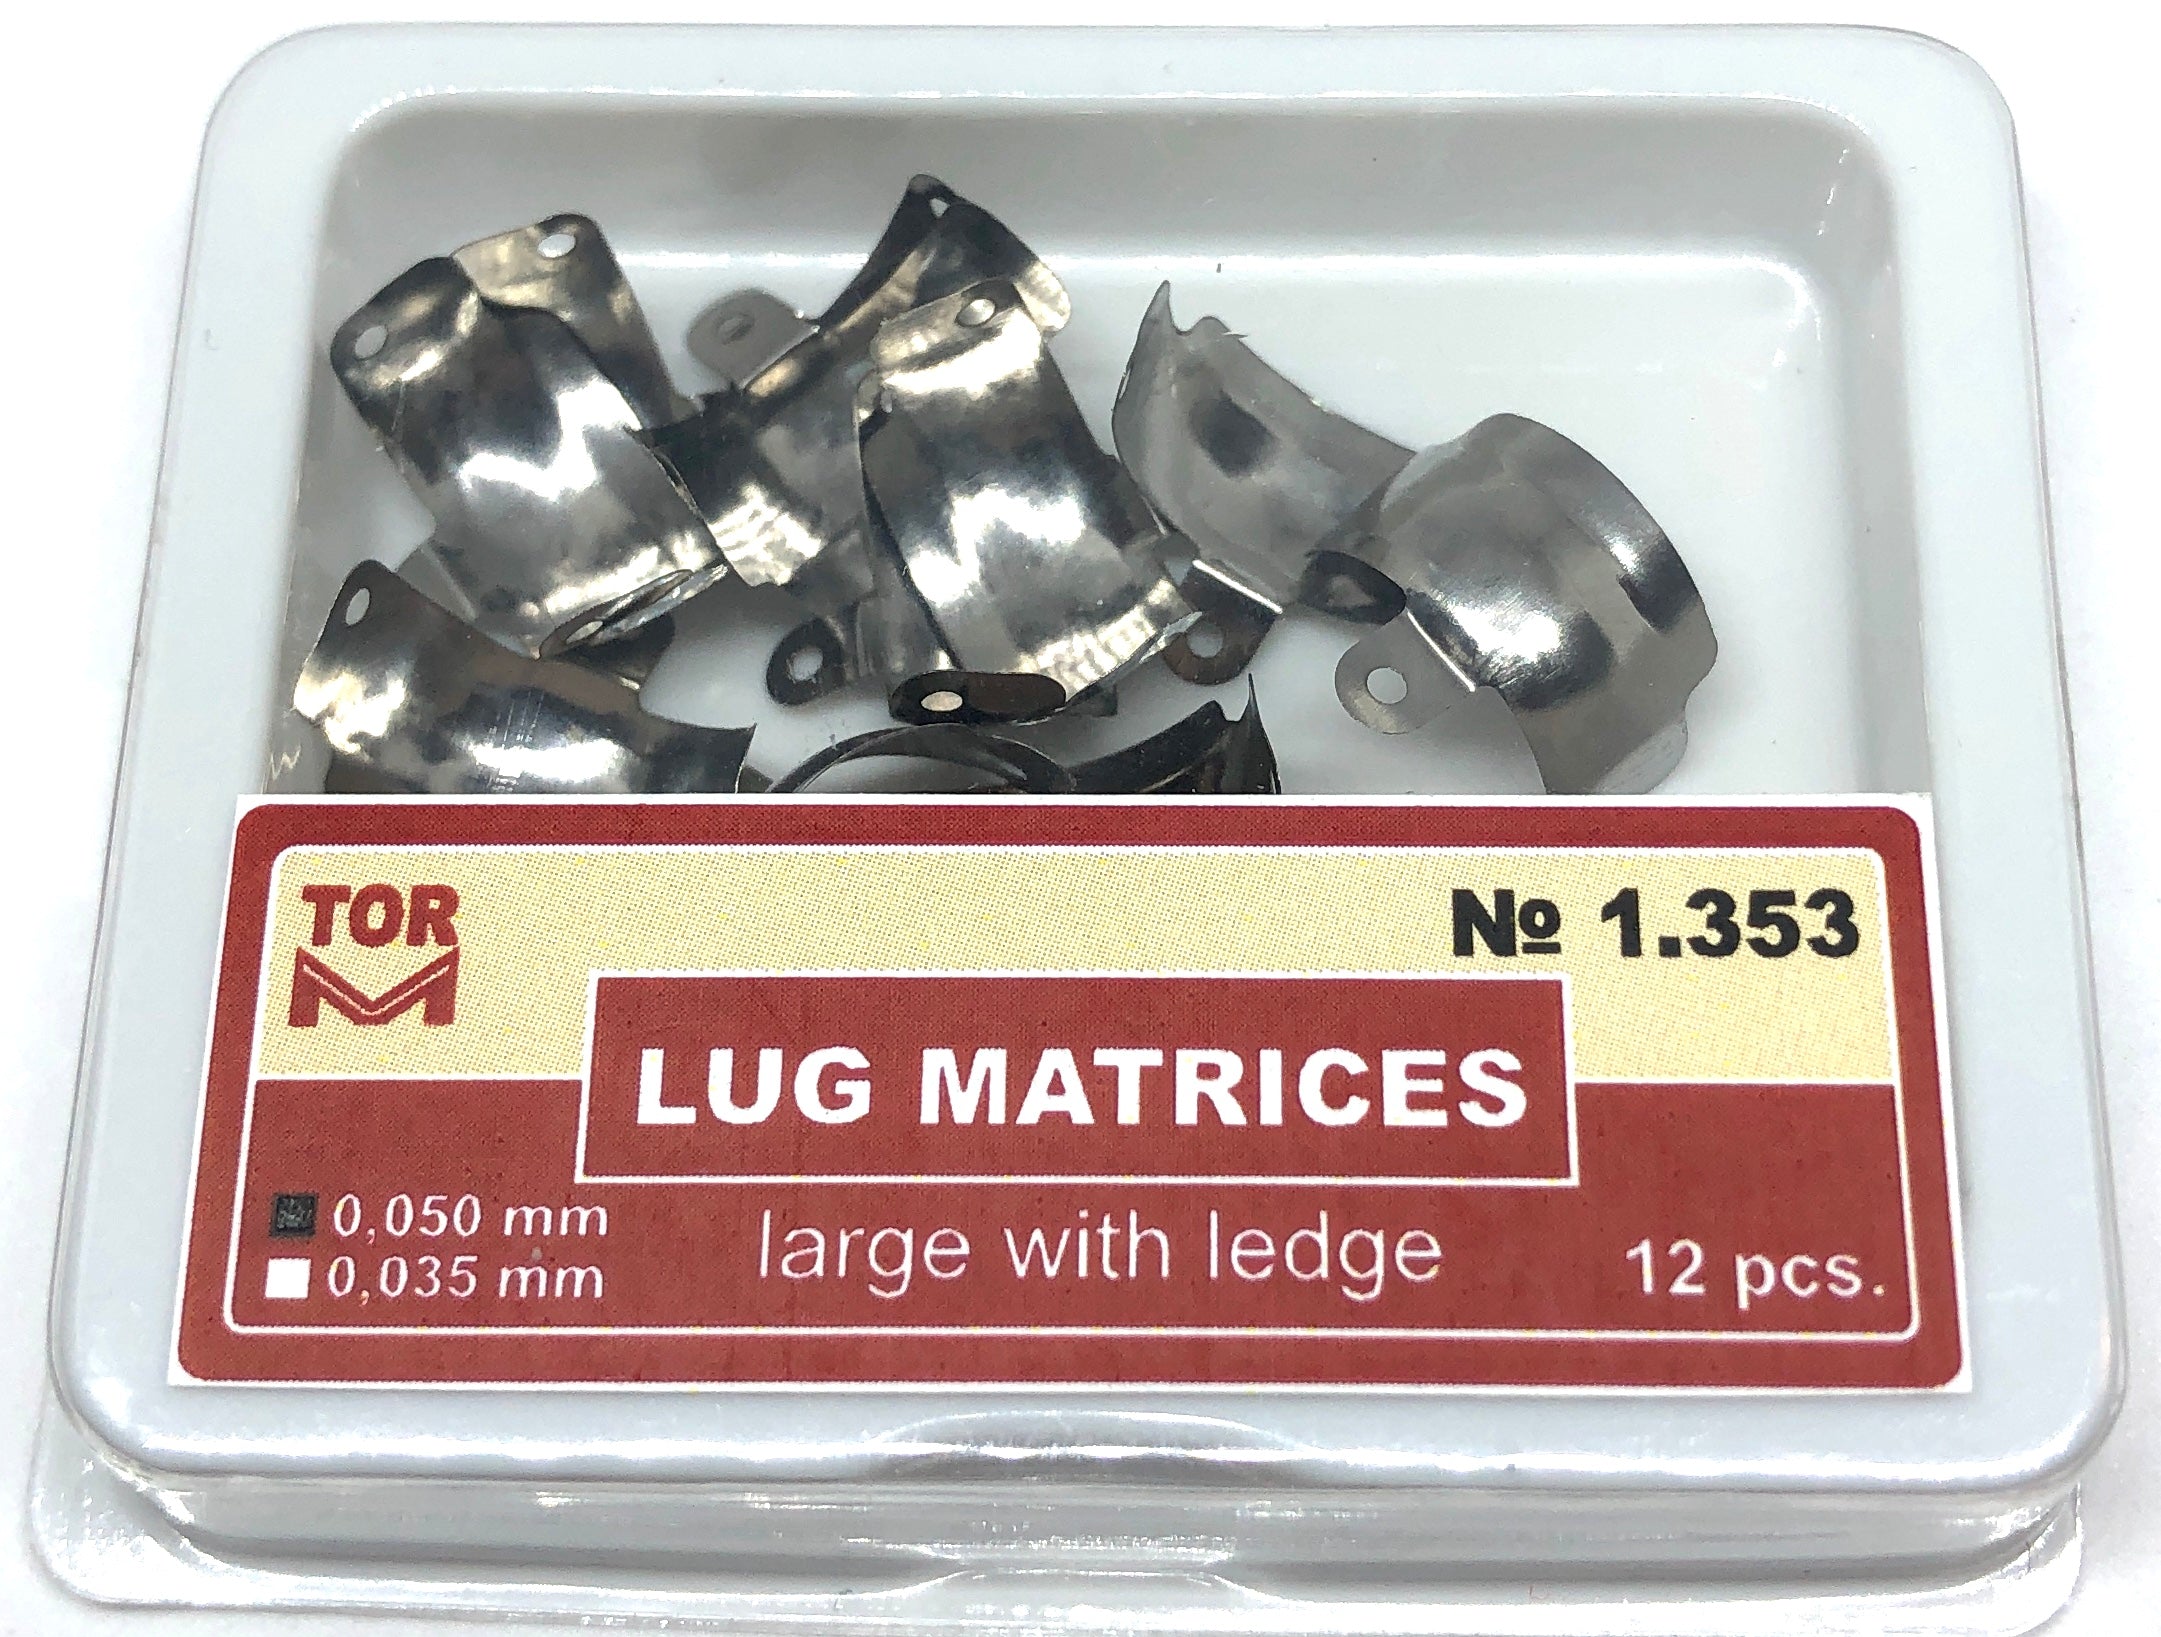 lug-matrices-large-with-ledge-12-pcs